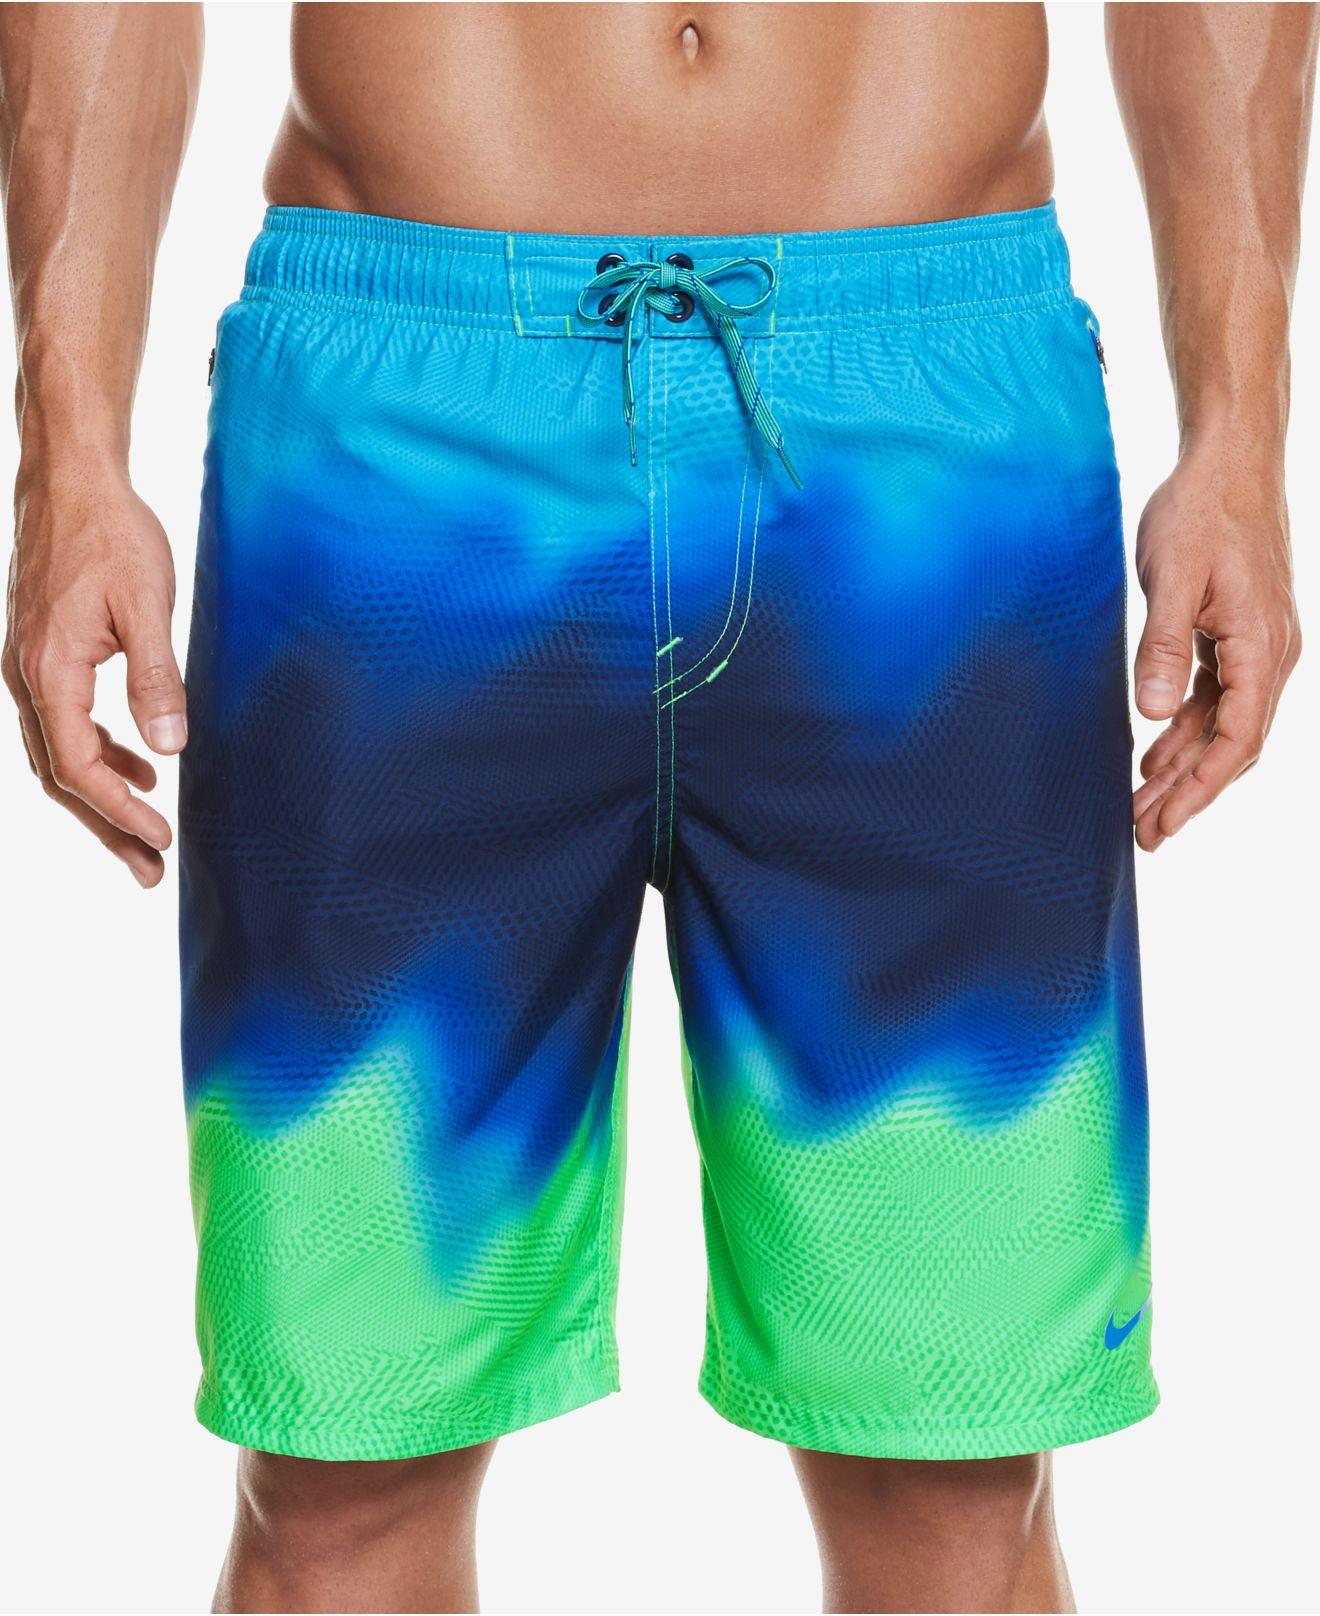 Lyst Nike Men's Liquid Haze Watershedding Swim Suit in Blue for Men